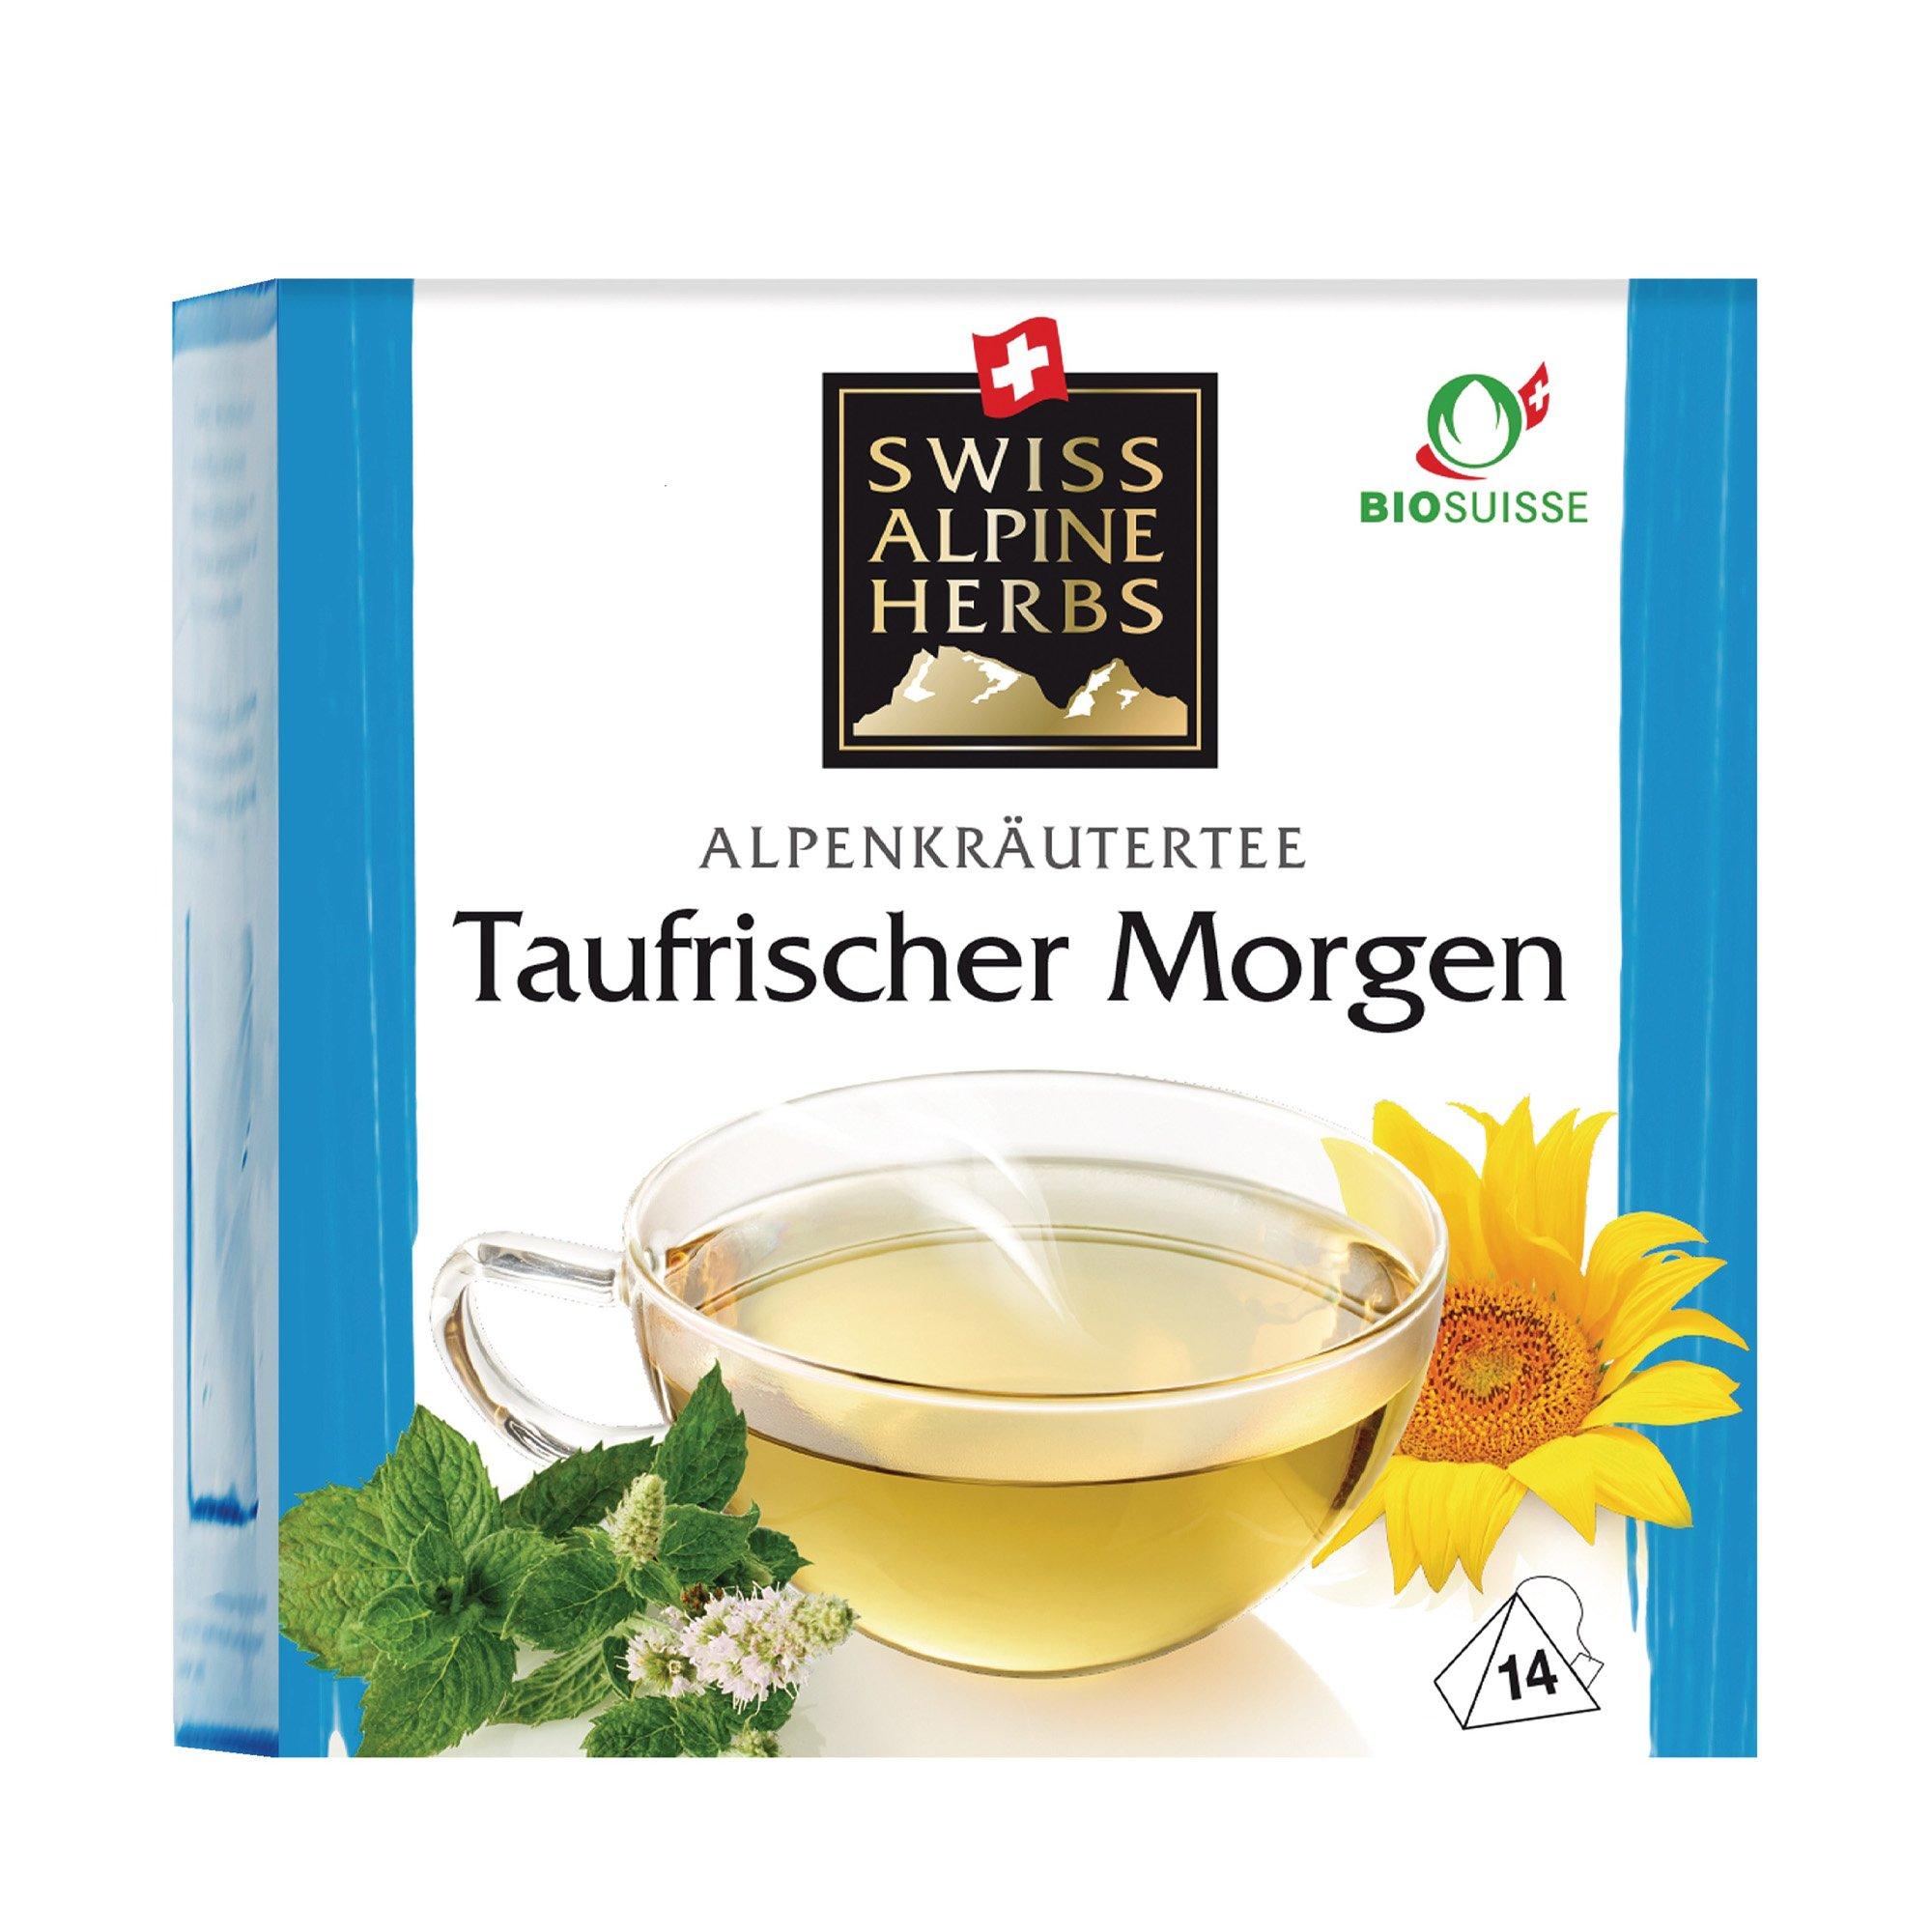 Image of Swiss Alpine Herbs Taufrischer Morgen - 14X1G